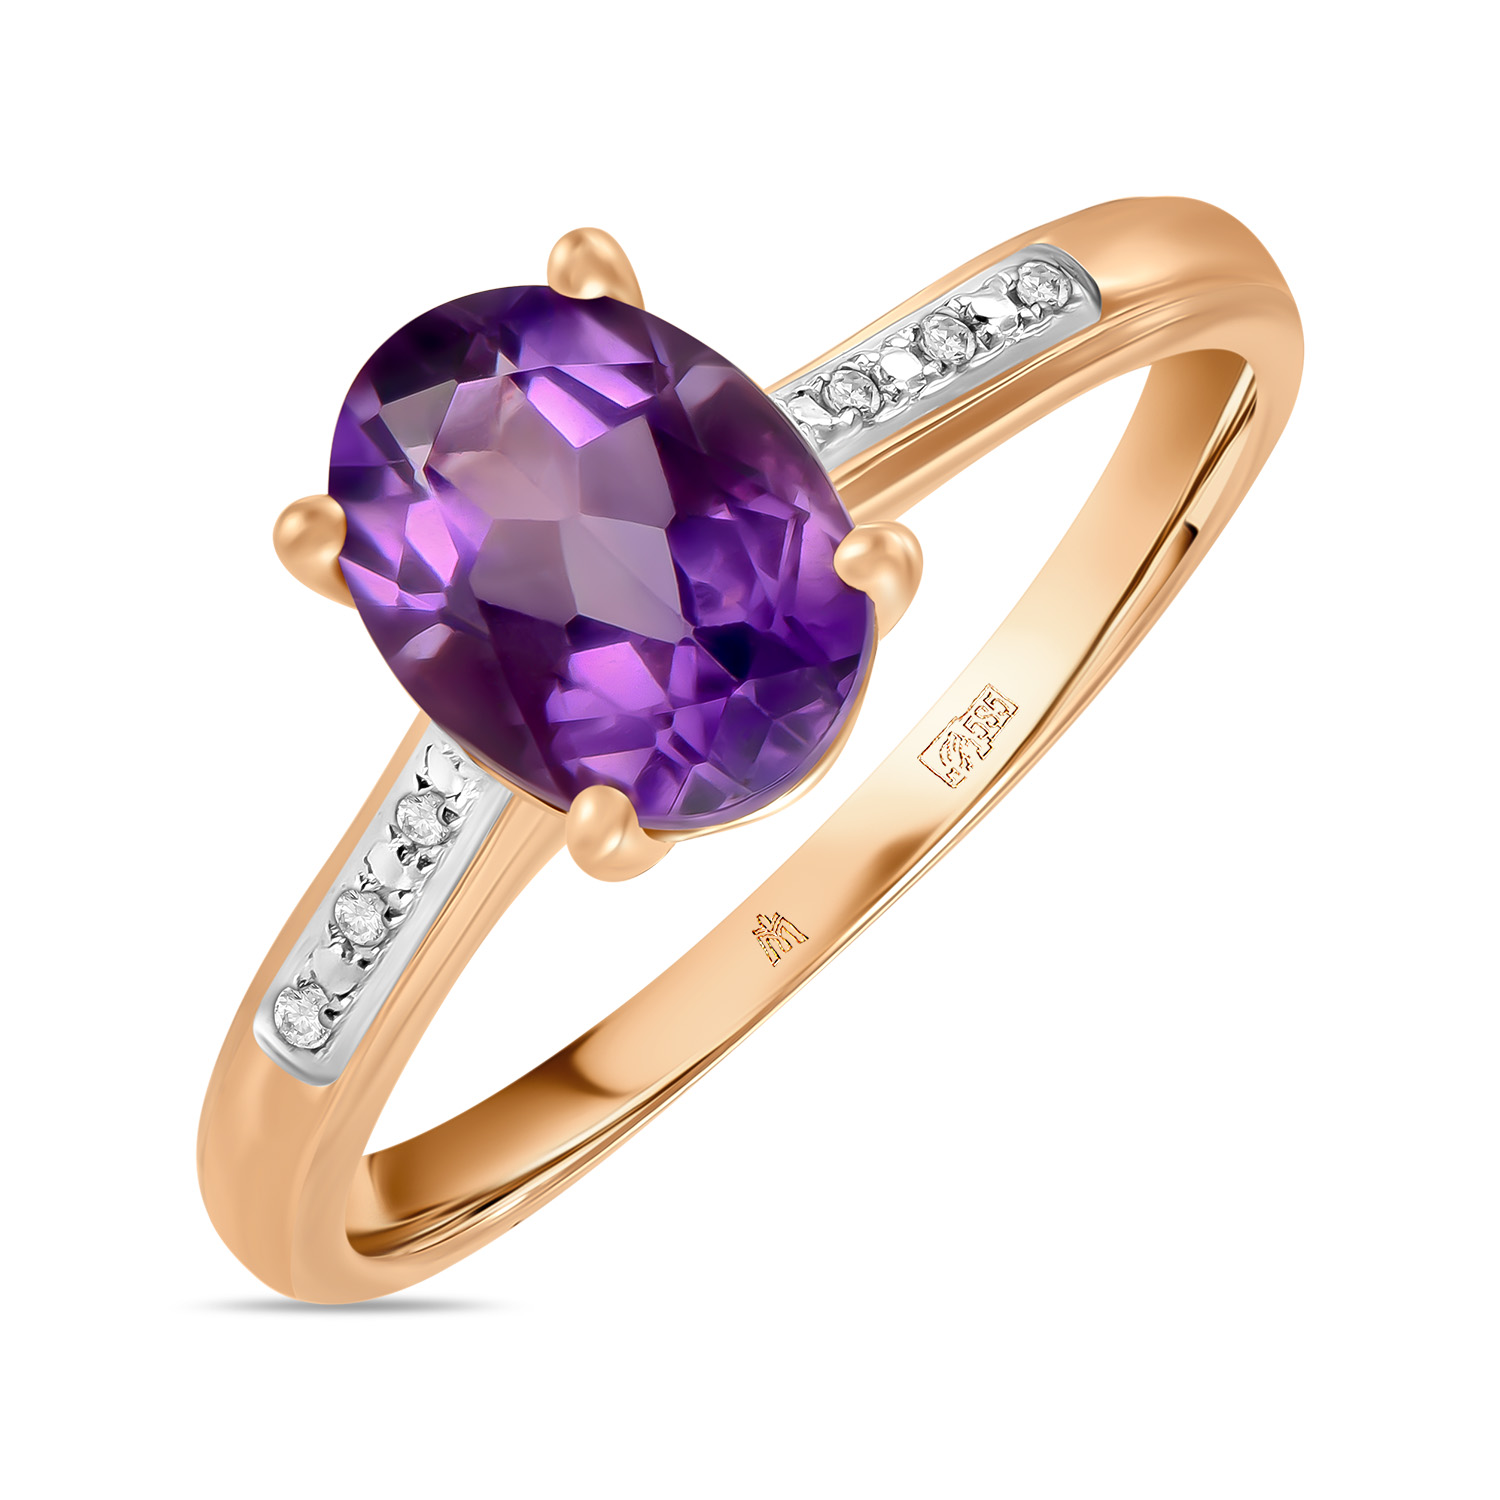 Кольца МЮЗ Золотое кольцо с аметистом и бриллиантами кольца мюз золотое кольцо с аметистом бриллиантами и эмалью